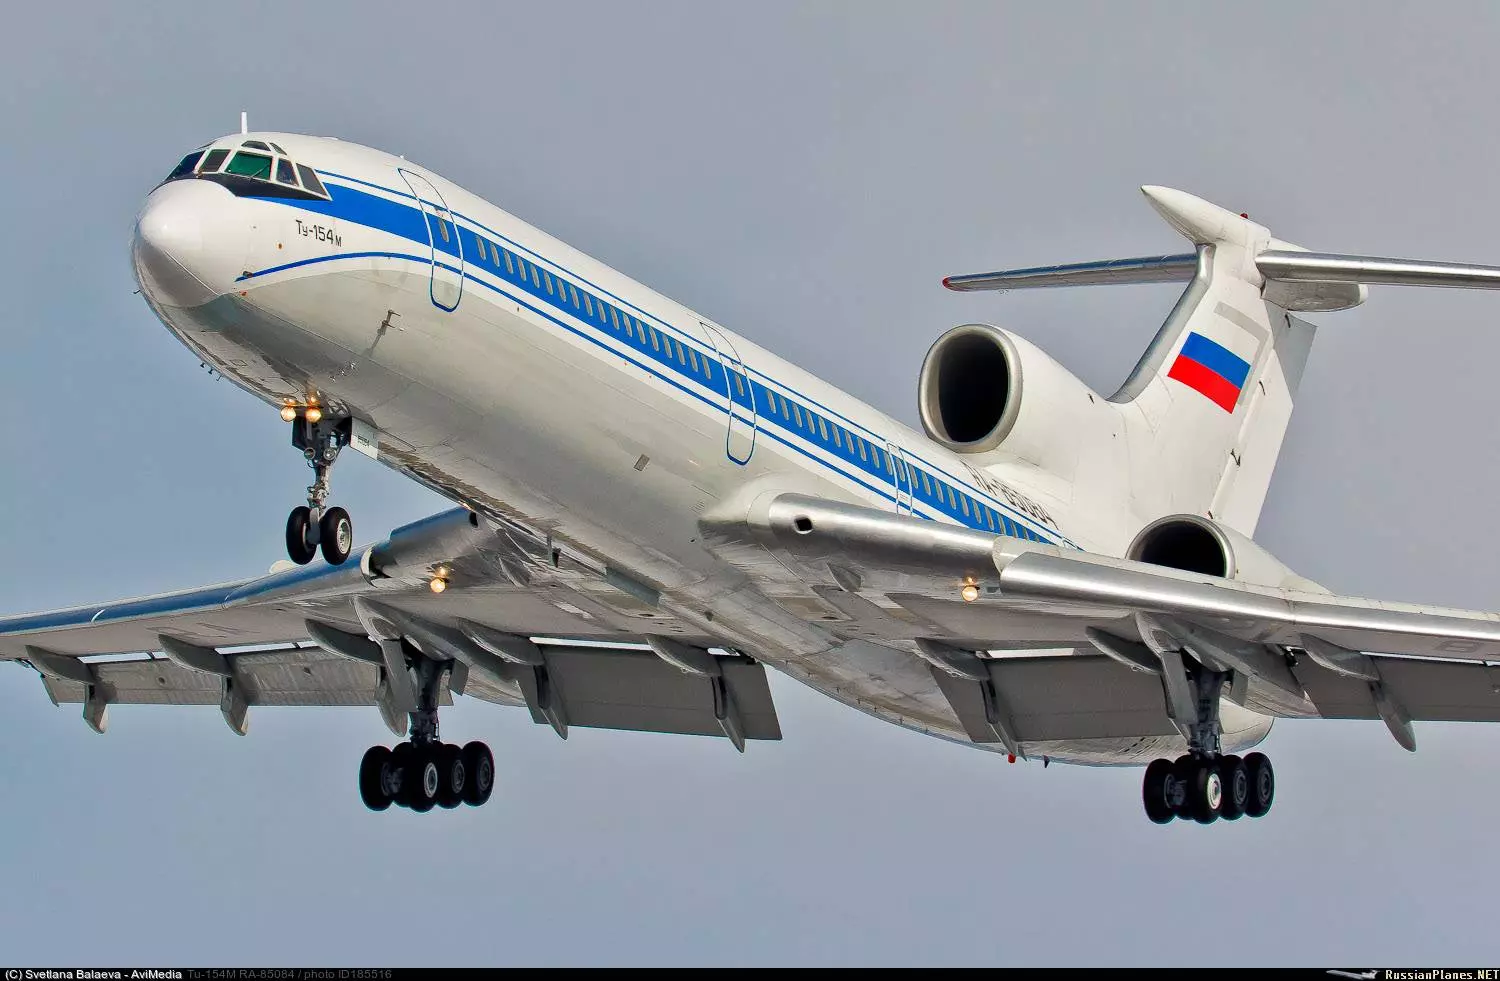 Последний полет ту-154: история знаменитого лайнера